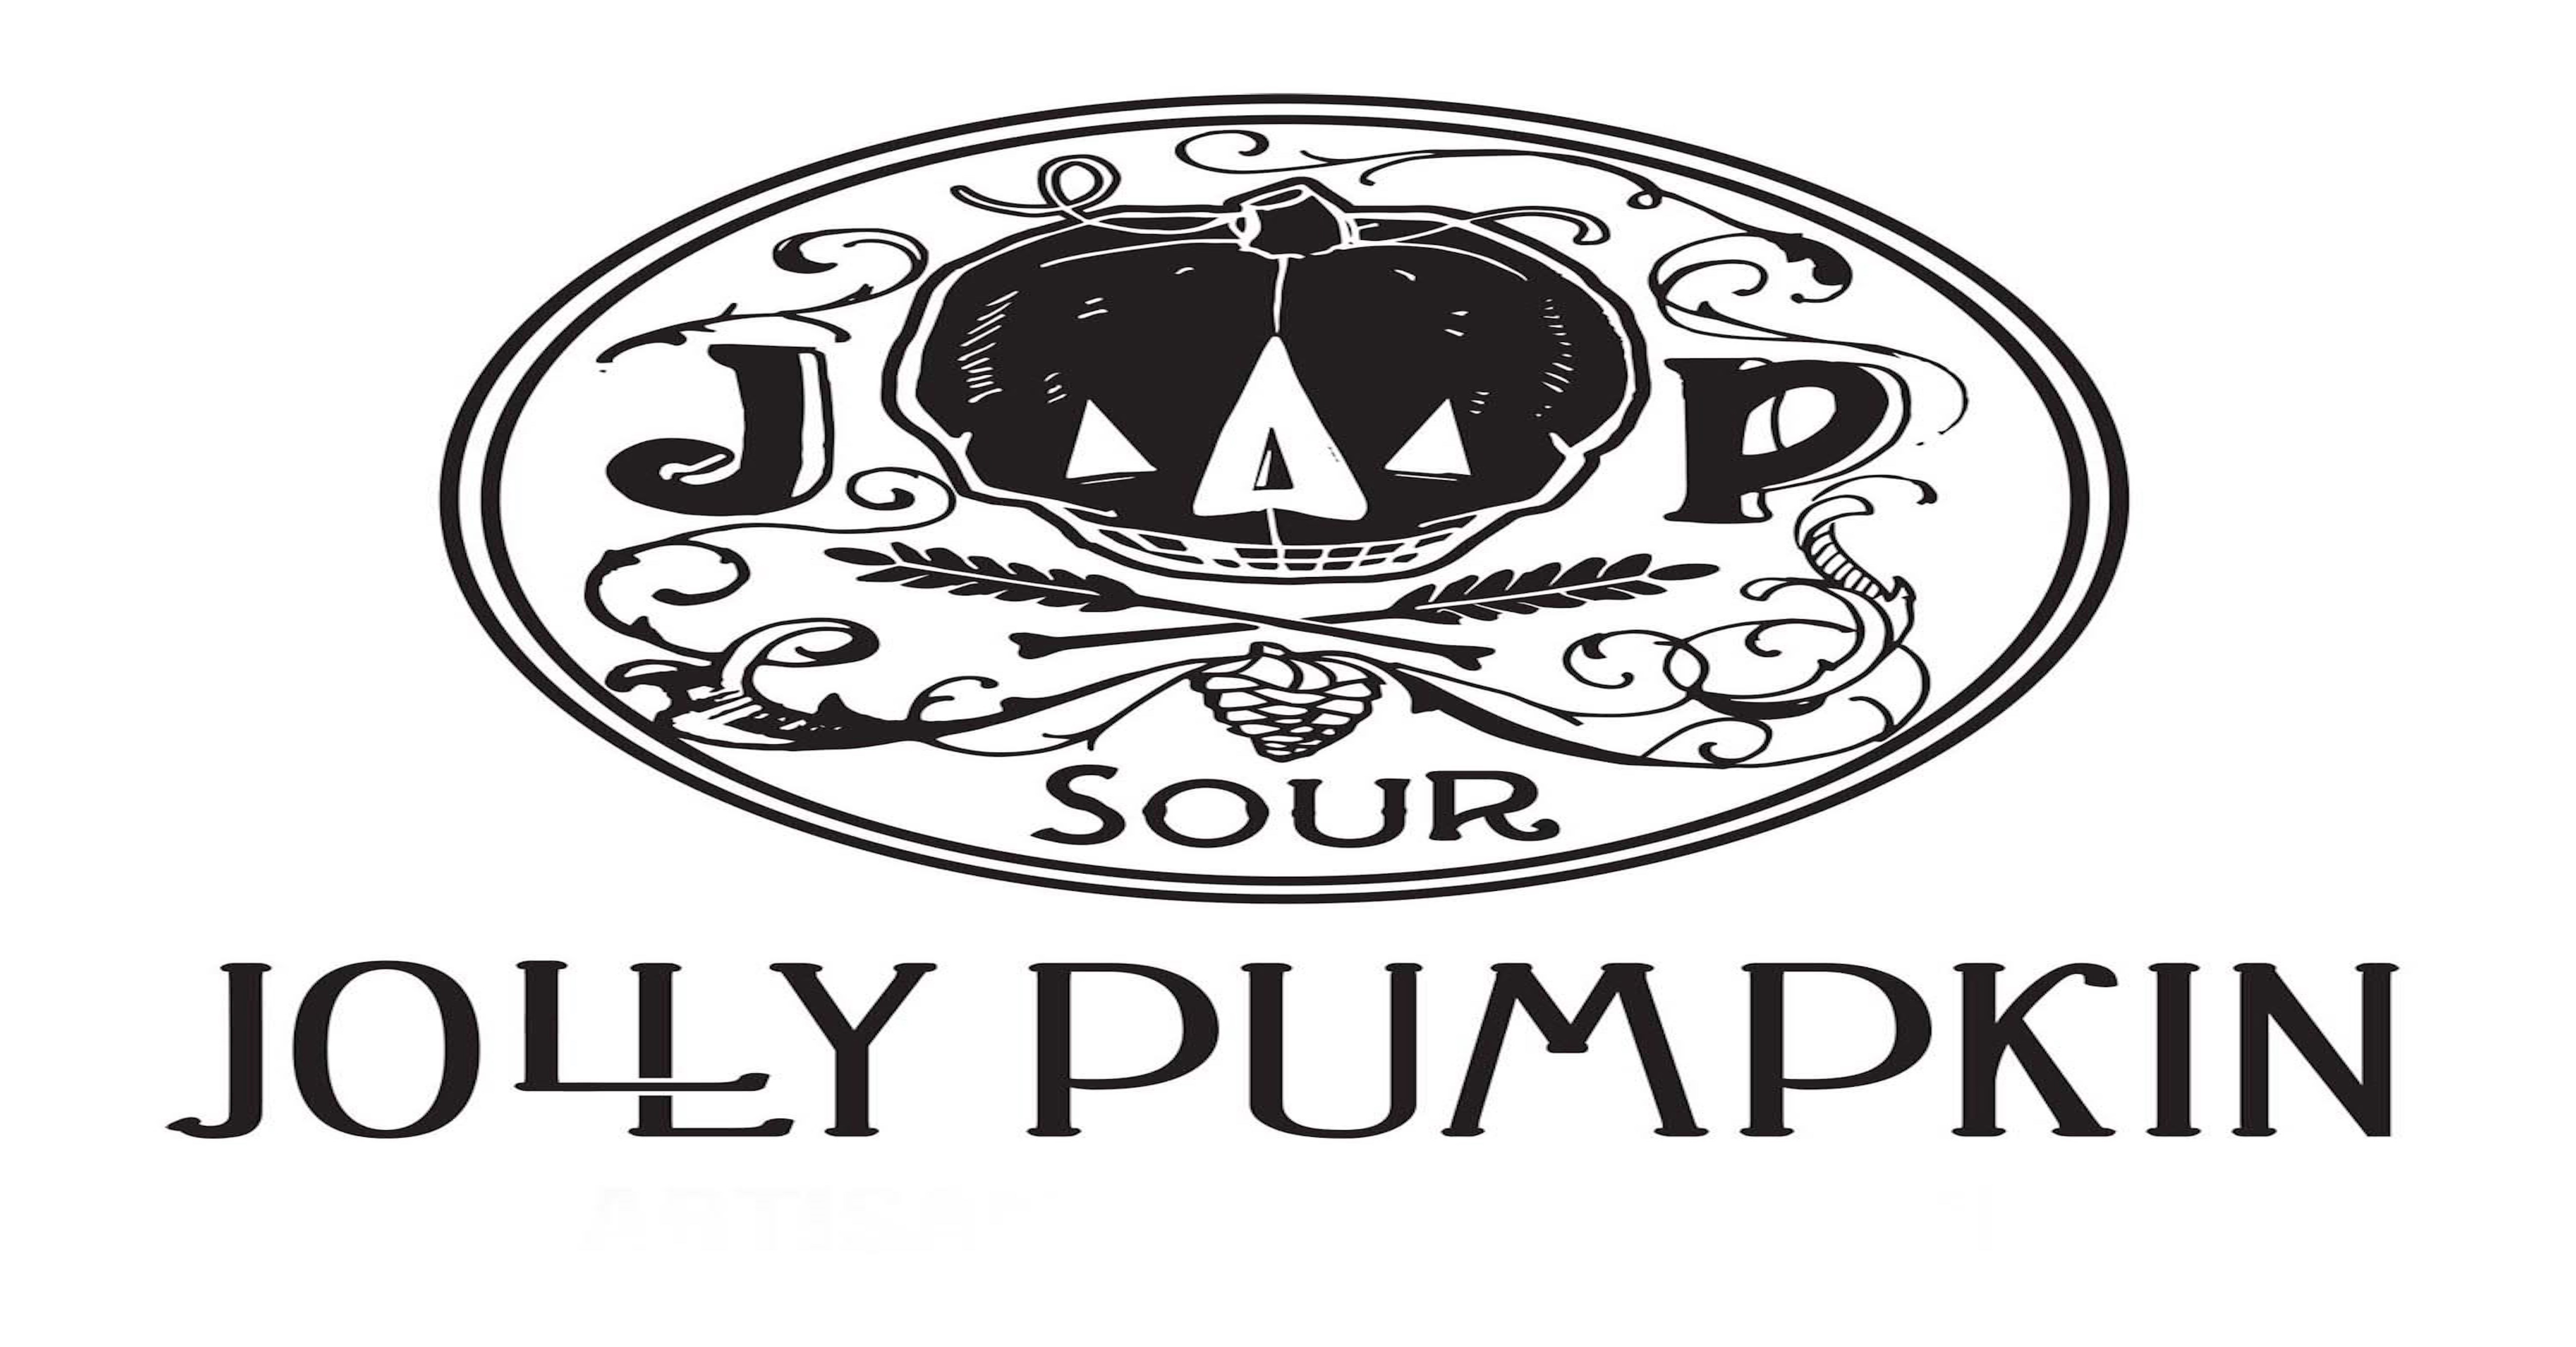 Jolly Pumpkin Cafe & Brewery (311 S Main St)